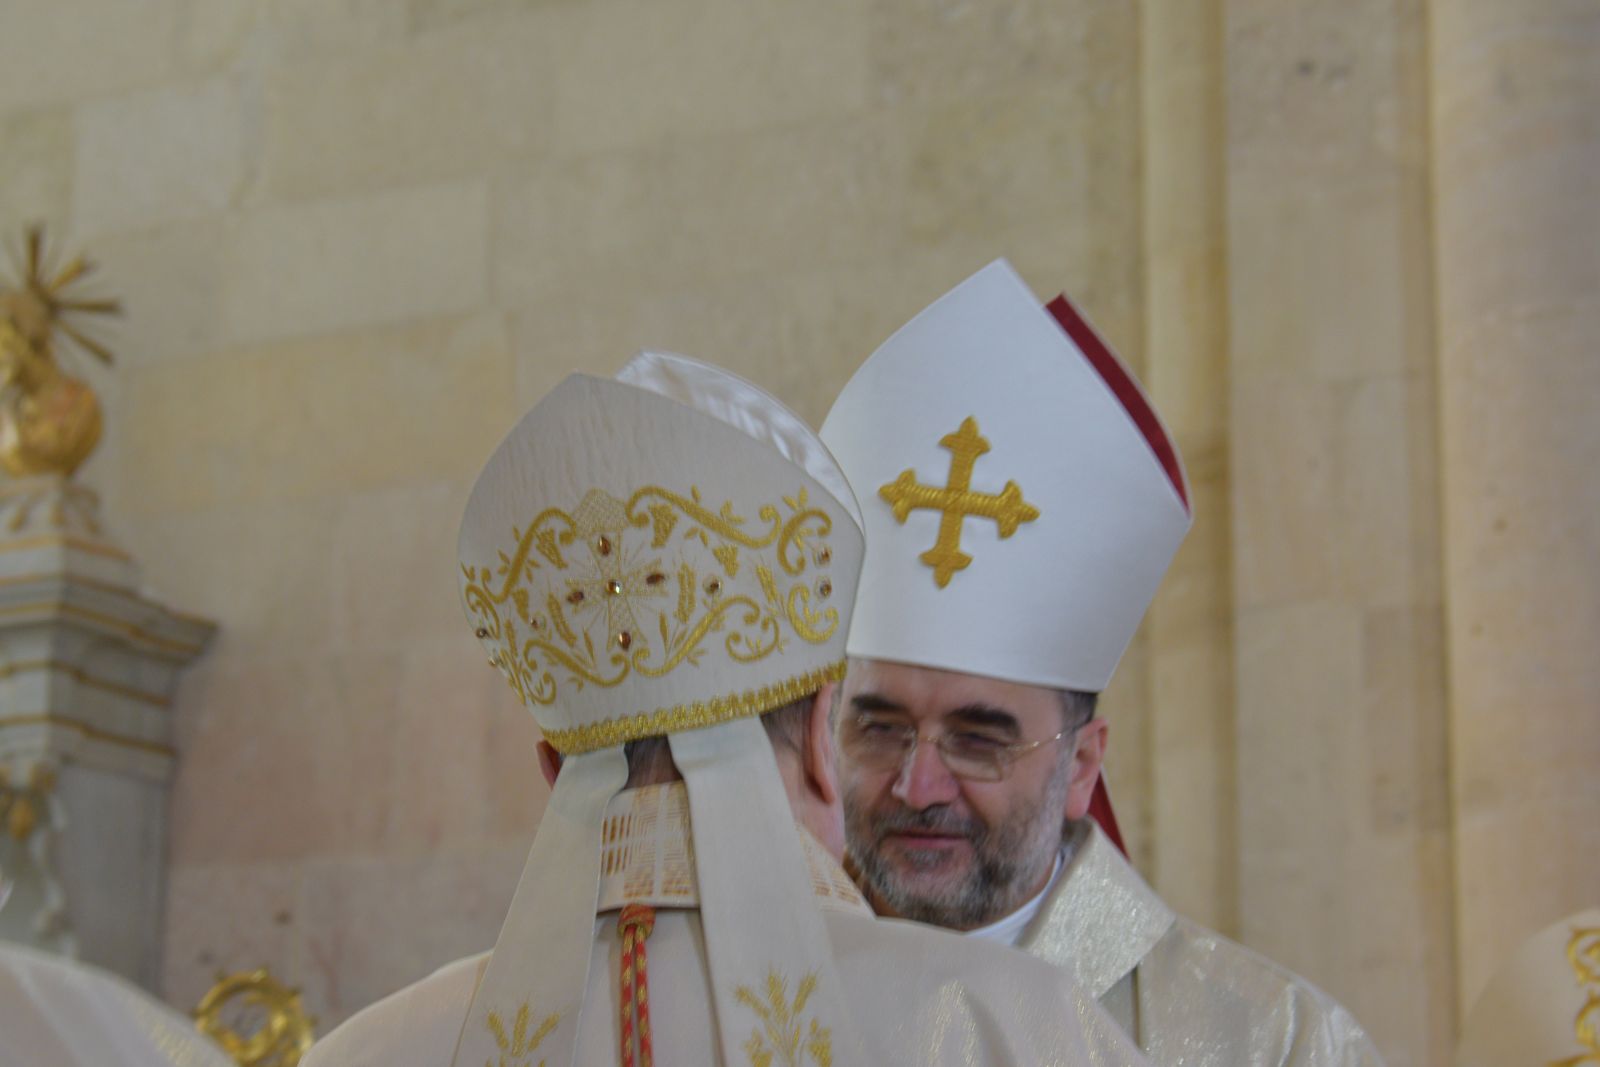 Kovács Gergelyt, a Kultúra Pápai Tanácsának irodaigazgatóját Ferenc pápa 2019 decemberében nevezte ki Jakubinyi György érsek utódjává. (Fotó: Bodó Márta)